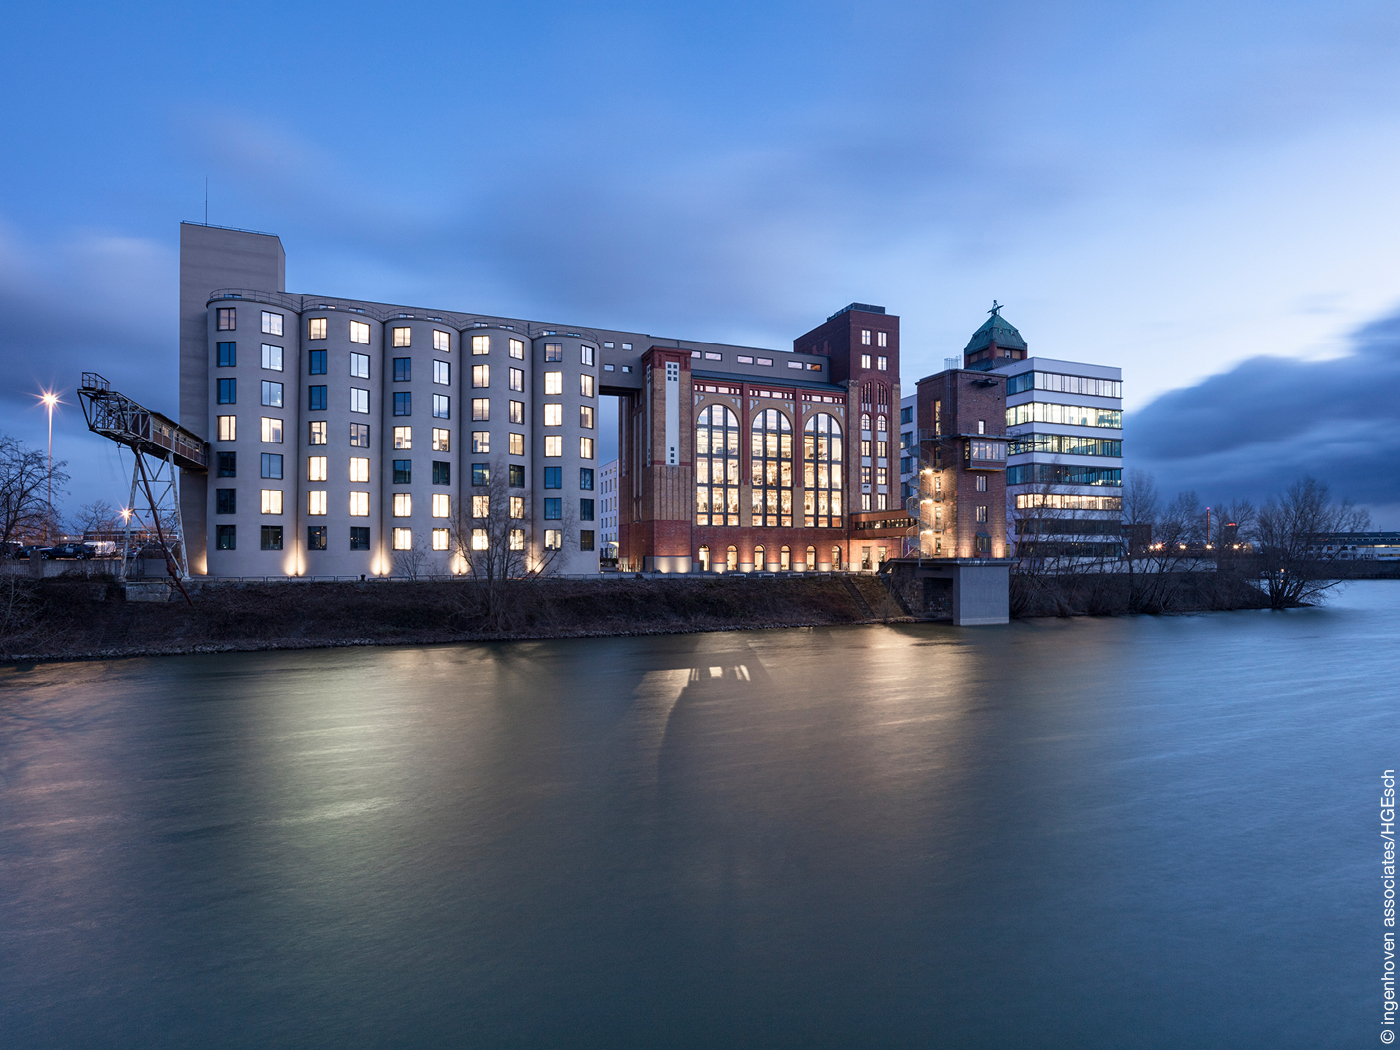 Silo mit beleuchteten Fenstern an Hafenbecken in Düsseldorf